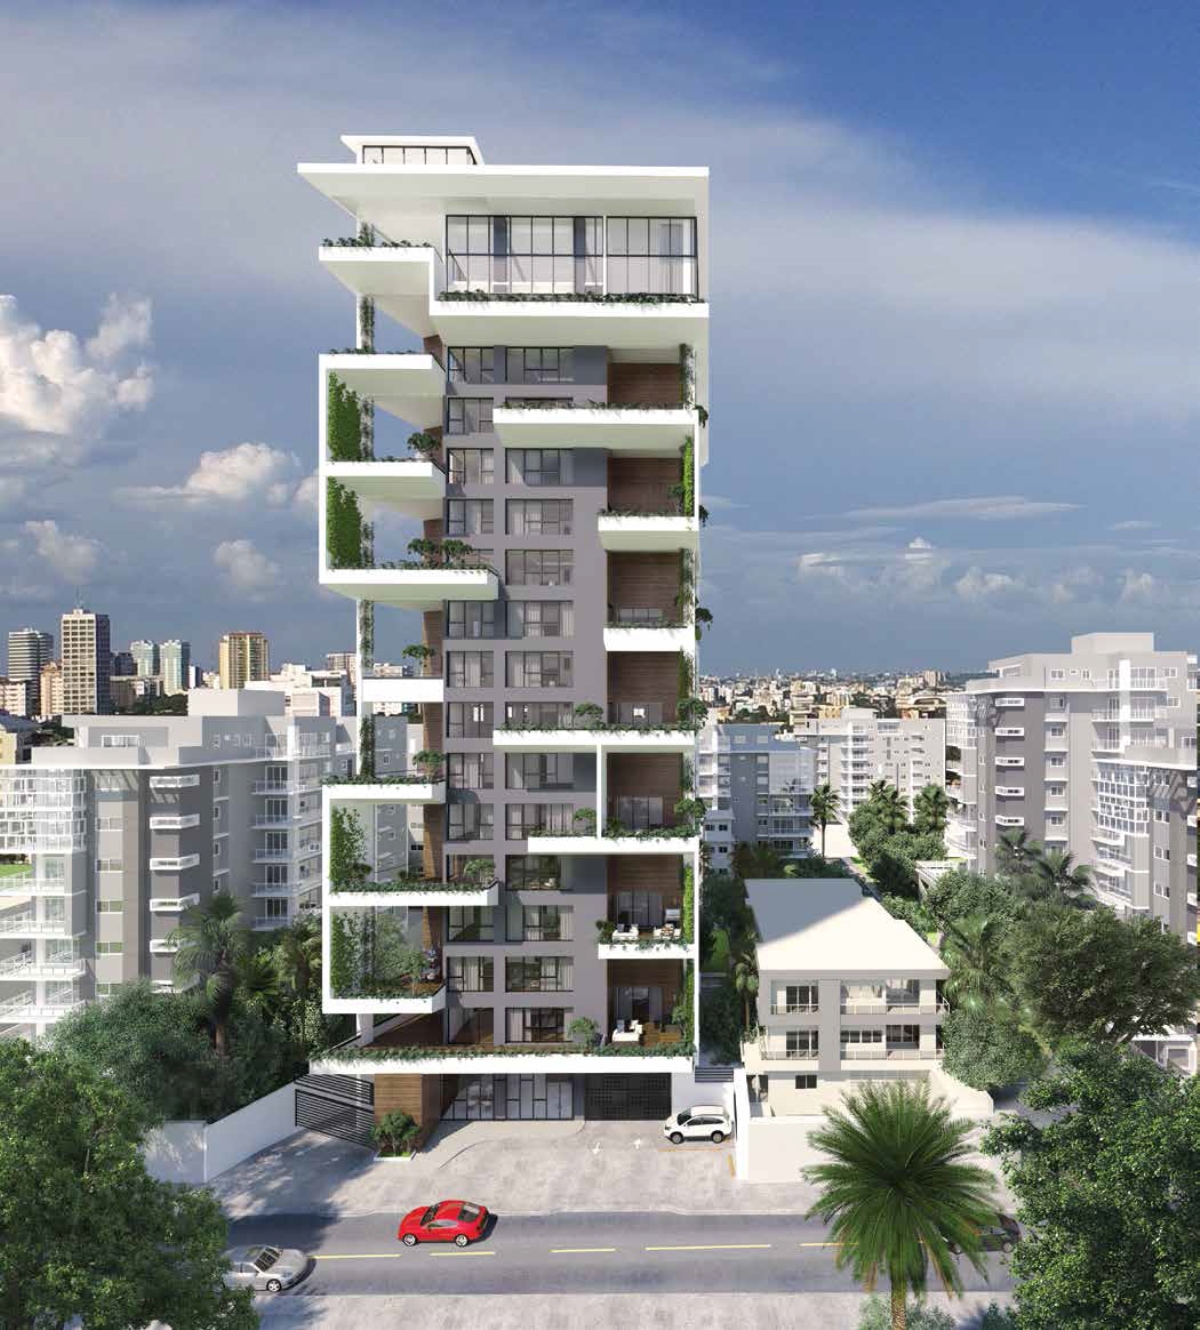 Exclusiva Torre Residencial de 21 Niveles de tan sólo 16 Apartamentos en Paraiso ID 2682